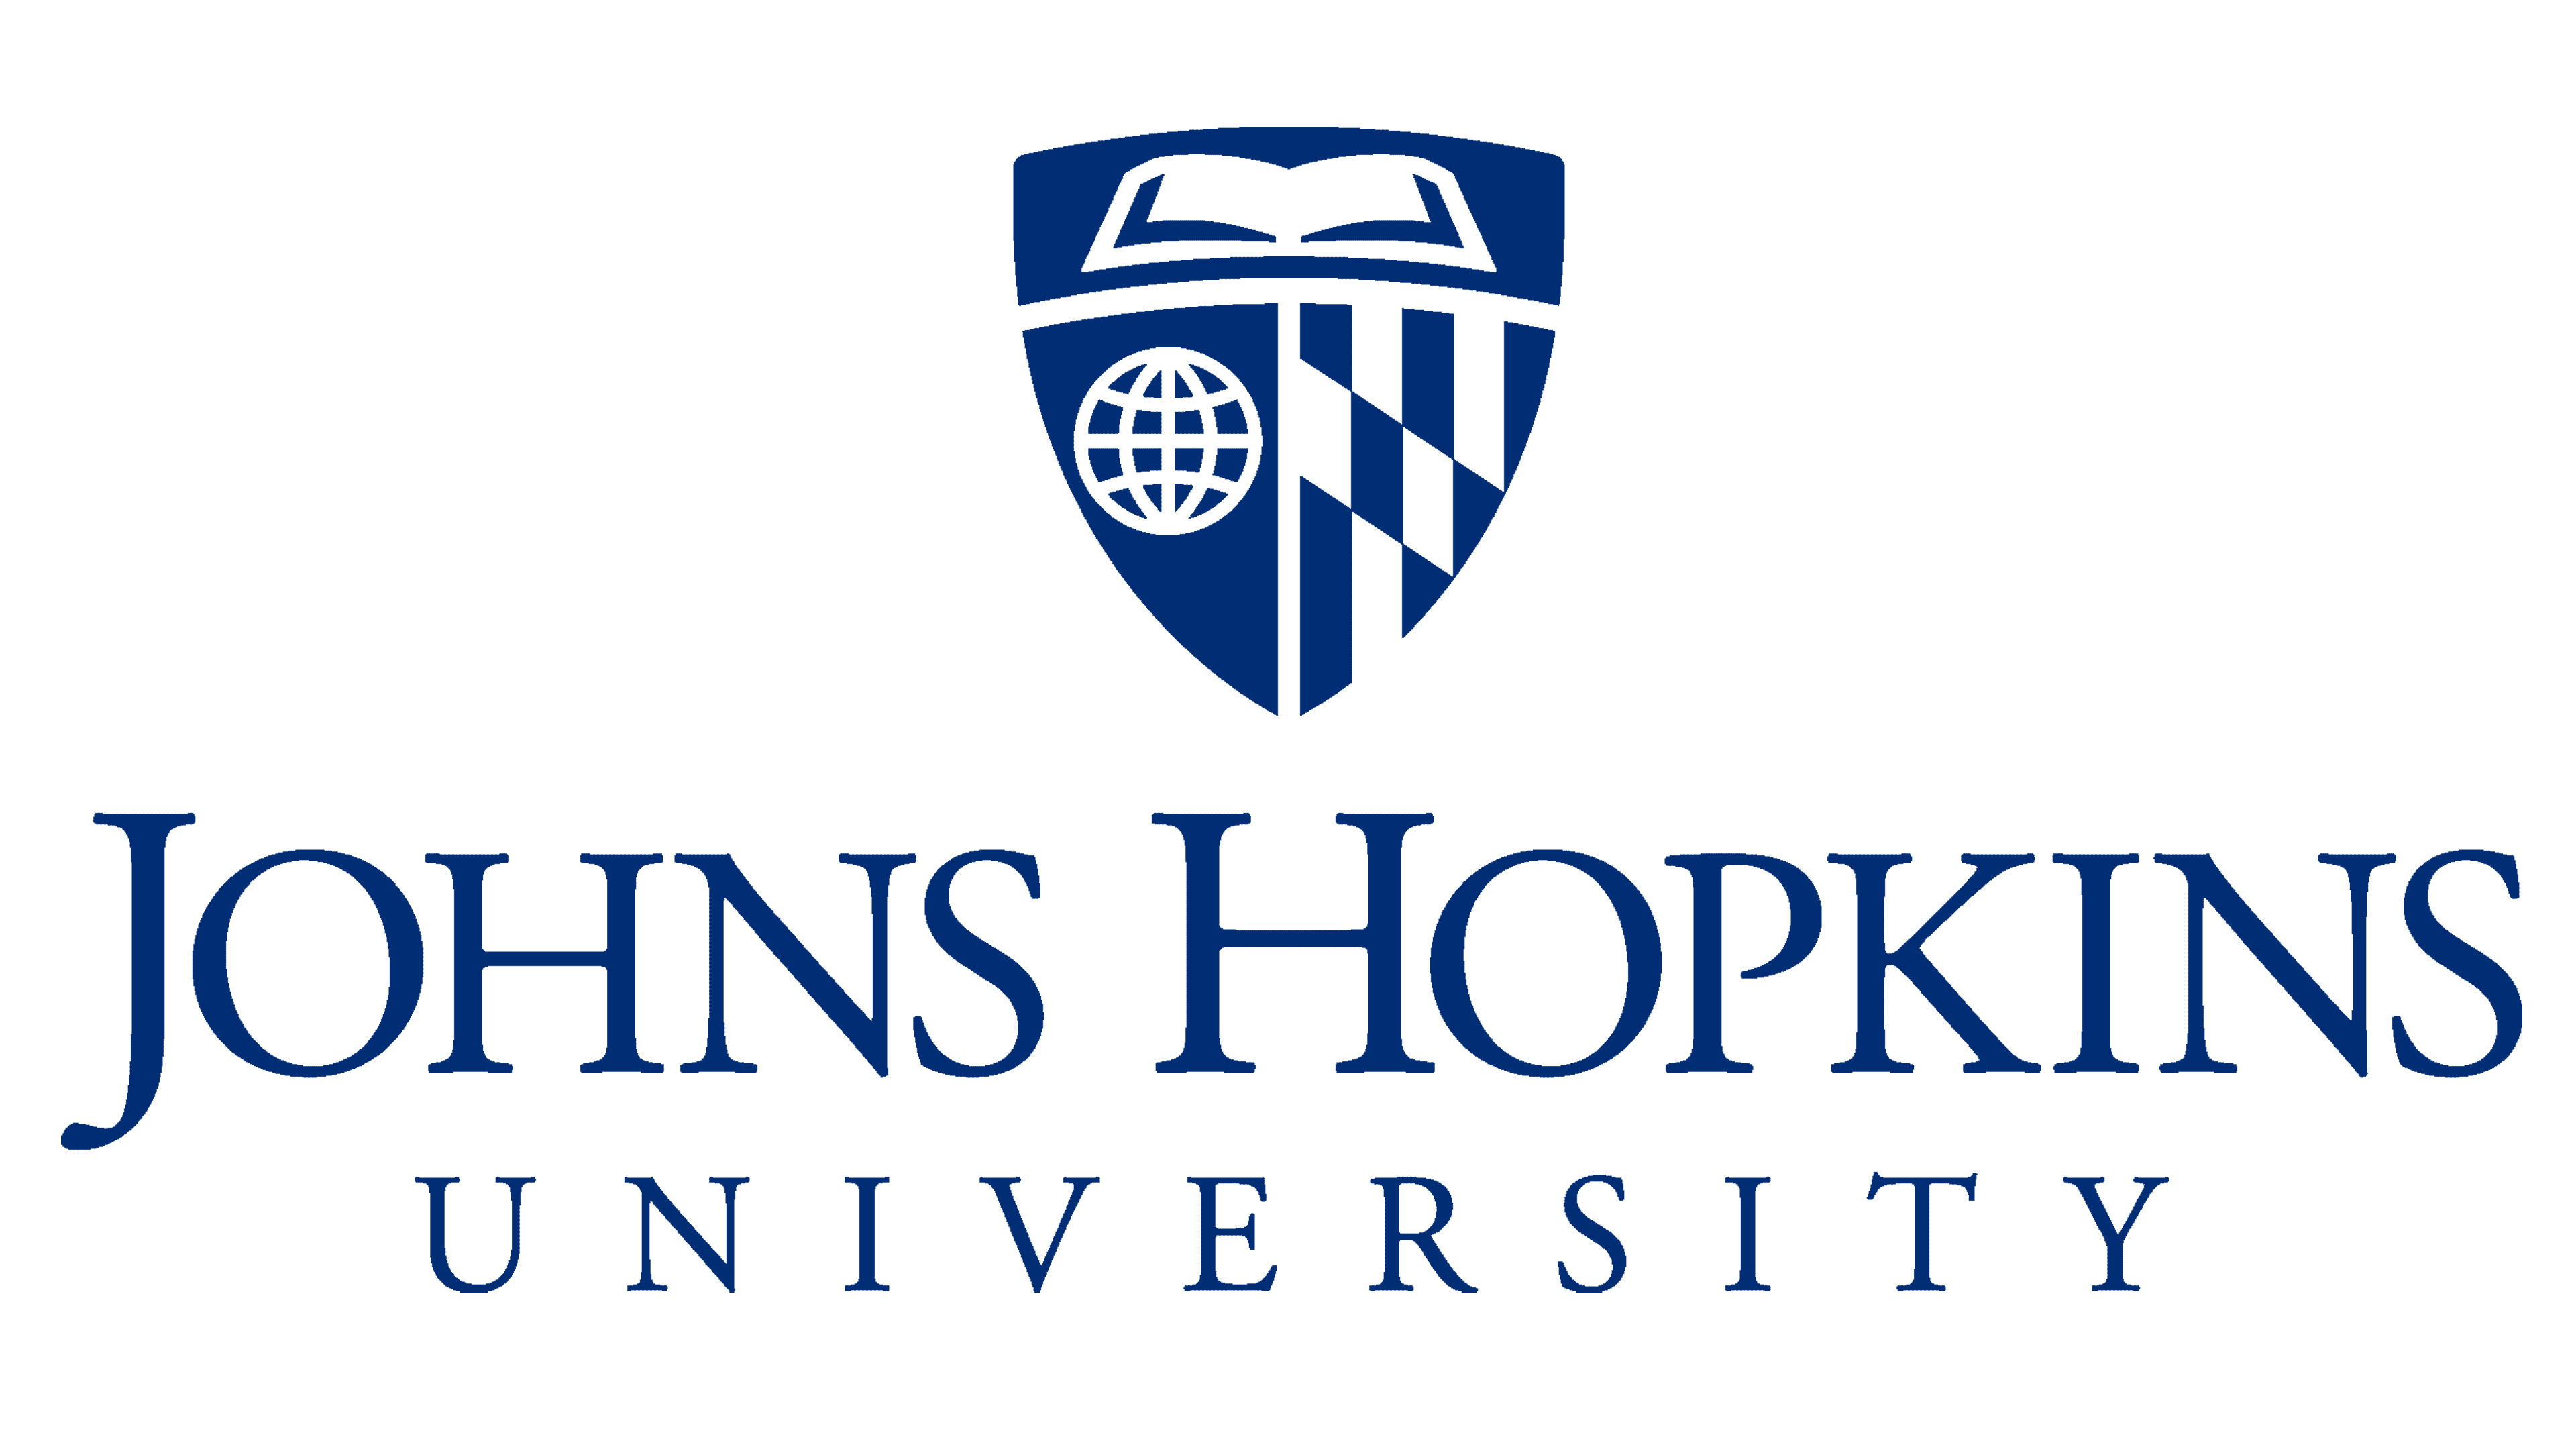 Университет джона хопкинса. Университет Джона Хопкинса лого. Университет Джона Хопкинса медицинский Факультет. MBA логотип. Логотип университета.